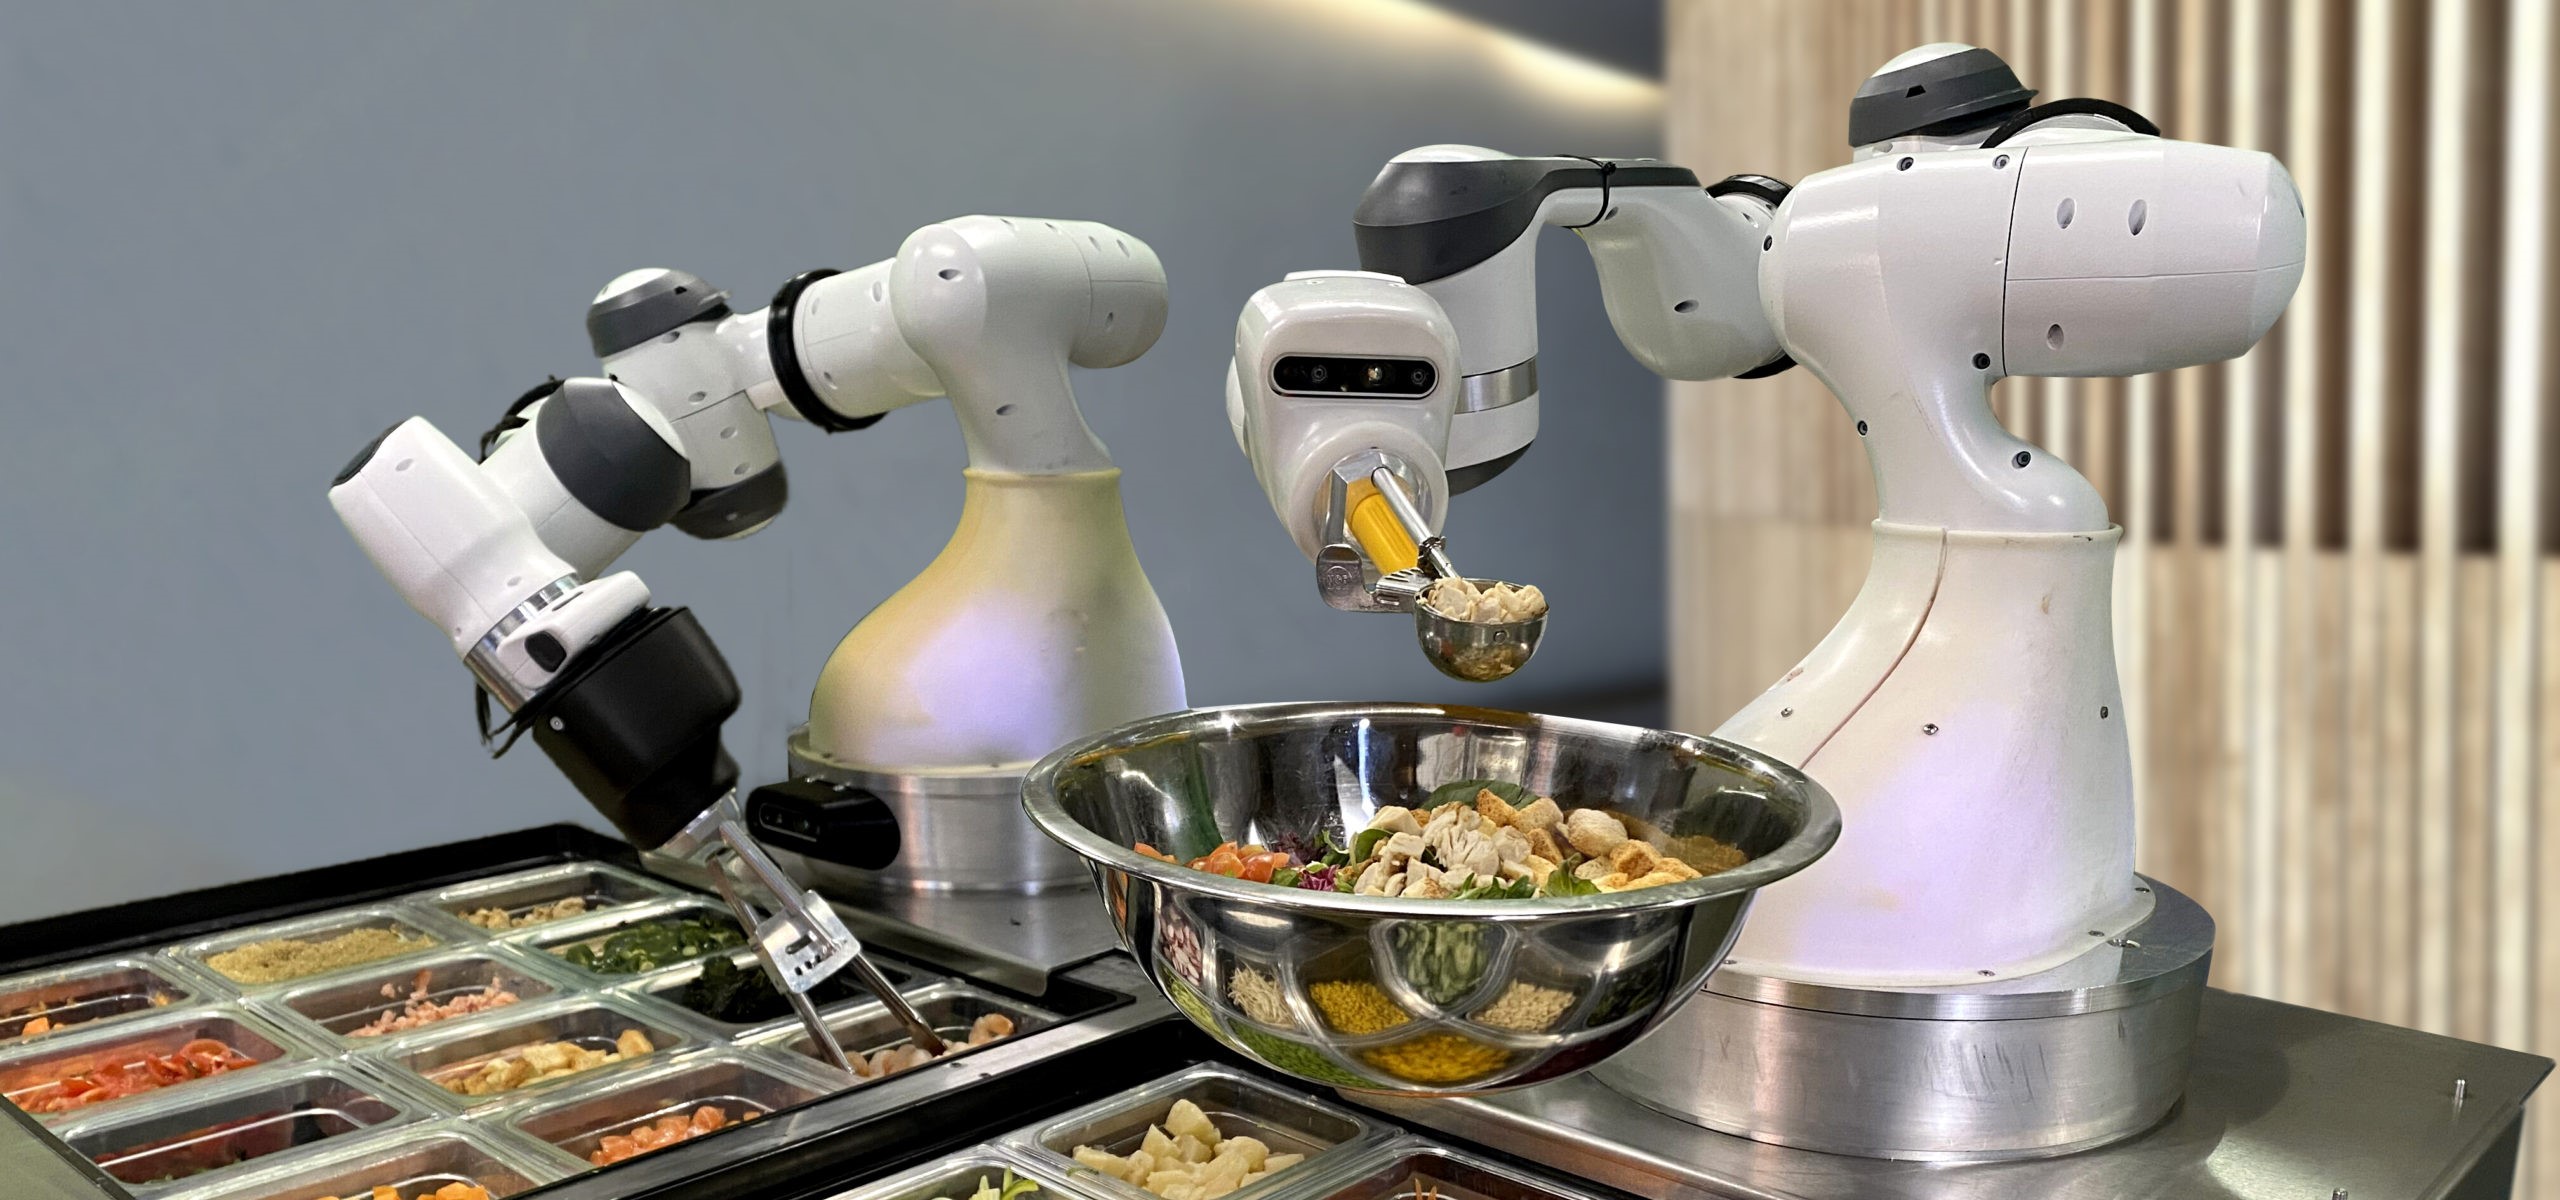 Робототехника и искусственный интеллект активно внедряются в сектор пищевых производств